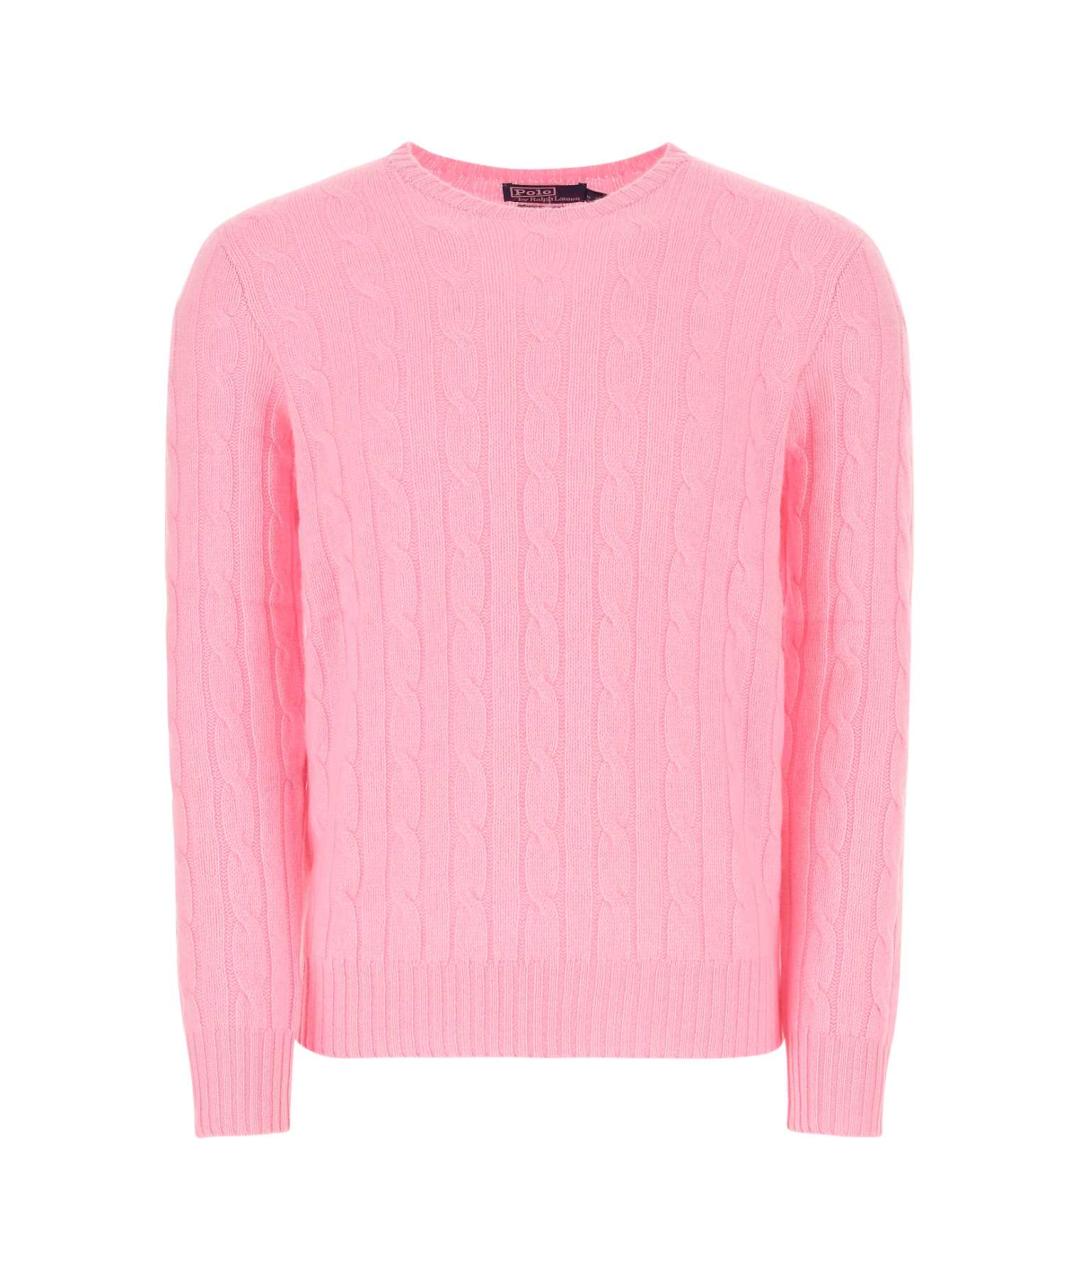 POLO RALPH LAUREN Розовый кашемировый джемпер / свитер, фото 1